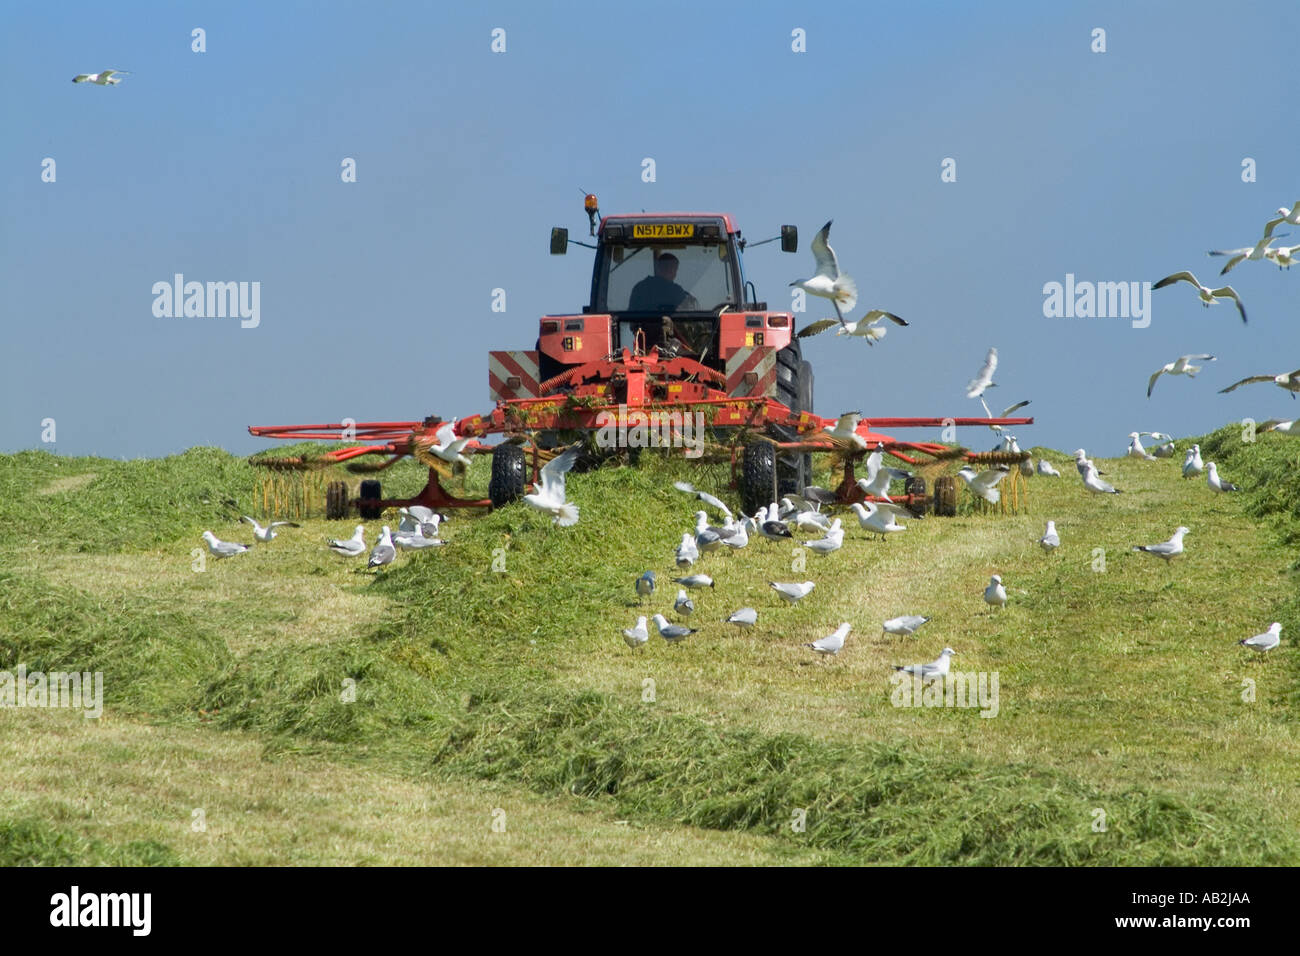 dh tracteur râtelage ensilage RÉCOLTE Royaume-Uni Écosse équipement herbe pour la récolte des seagulles nourrissant les oiseaux troupeau ferme machines foin terres agricoles Banque D'Images